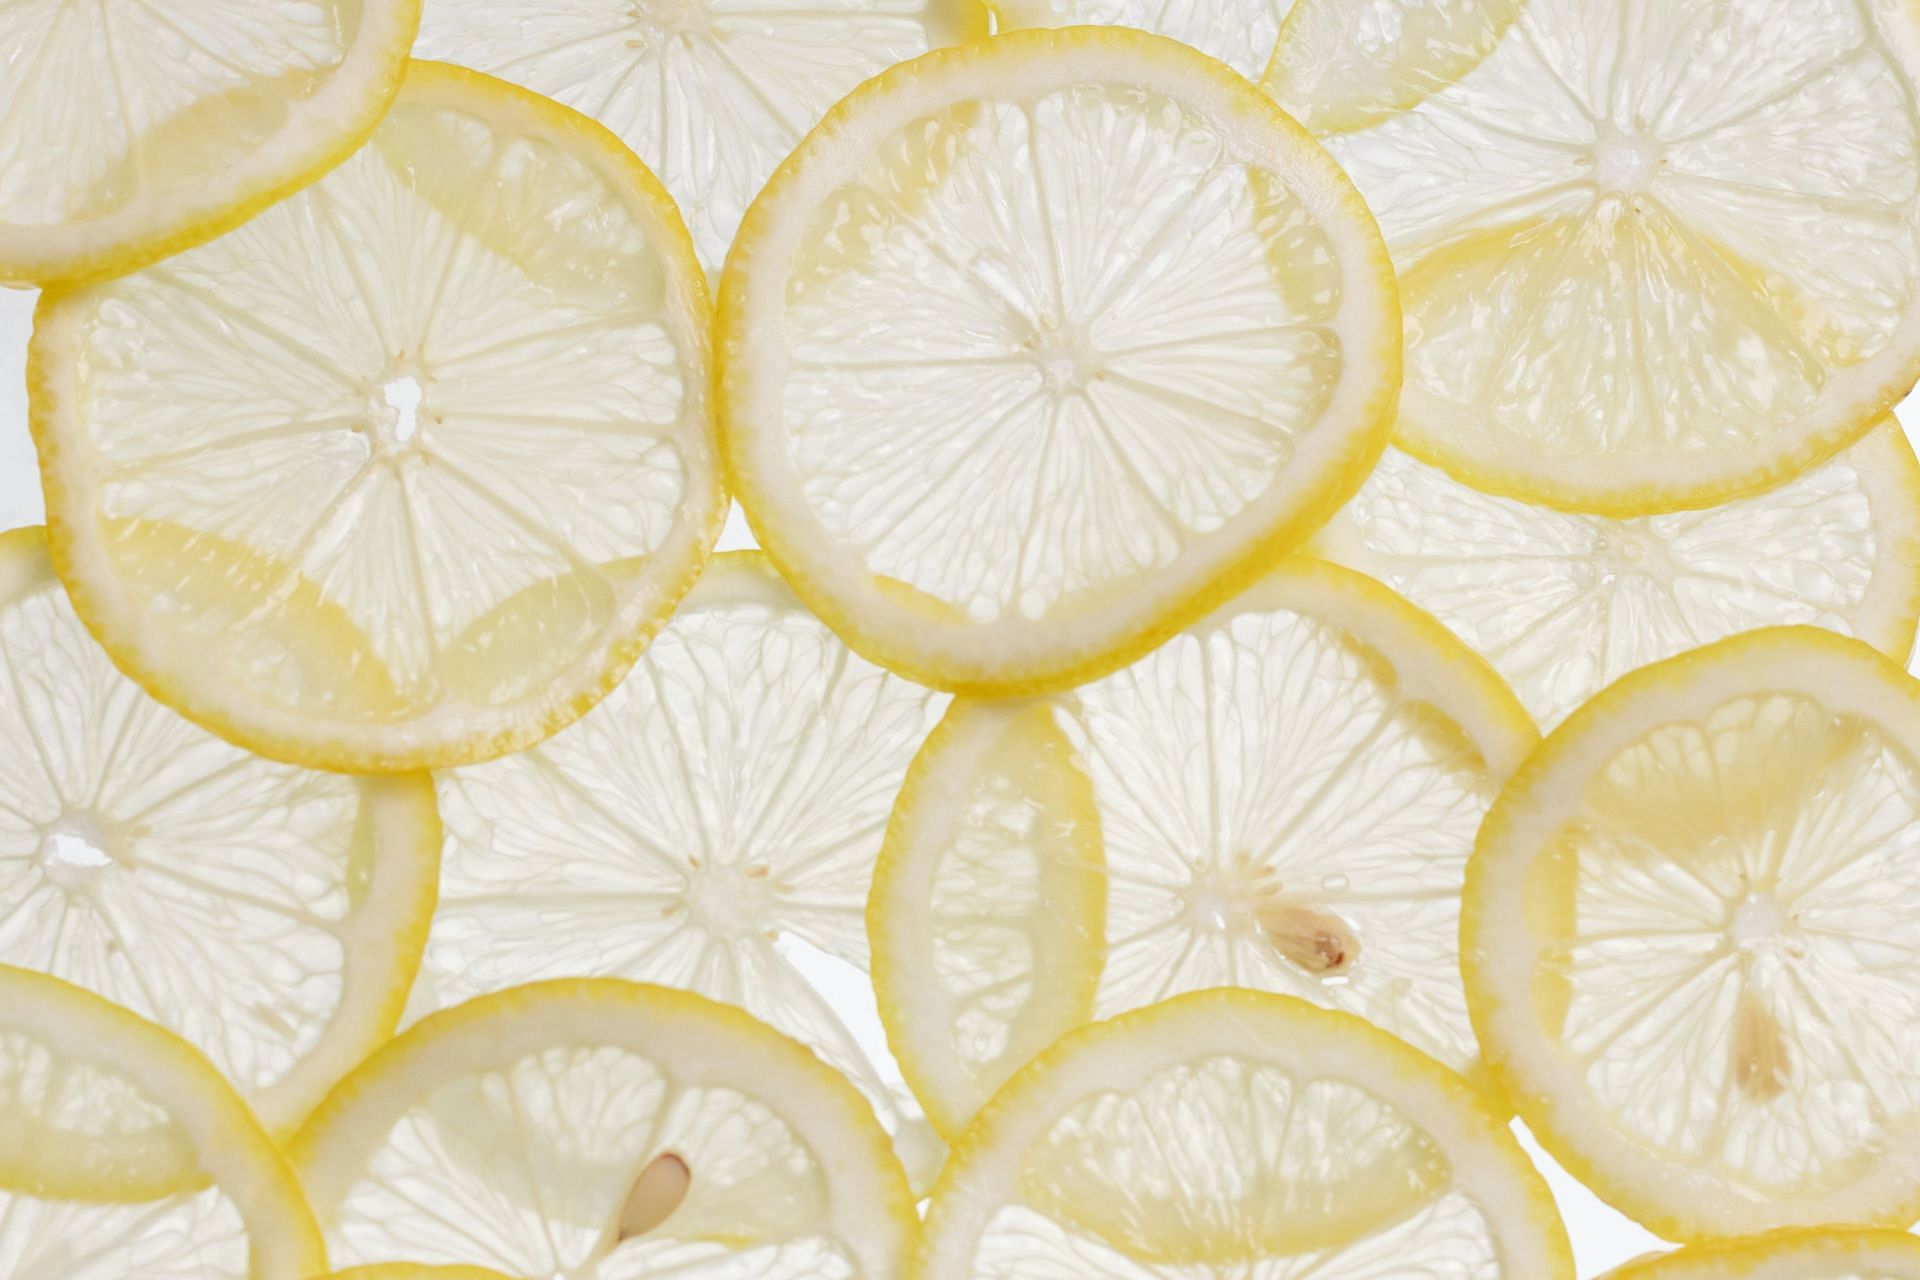 Citrus Fruits: C-Rich Oranges, Lemons, and Grapefruits (Image via Pexels)